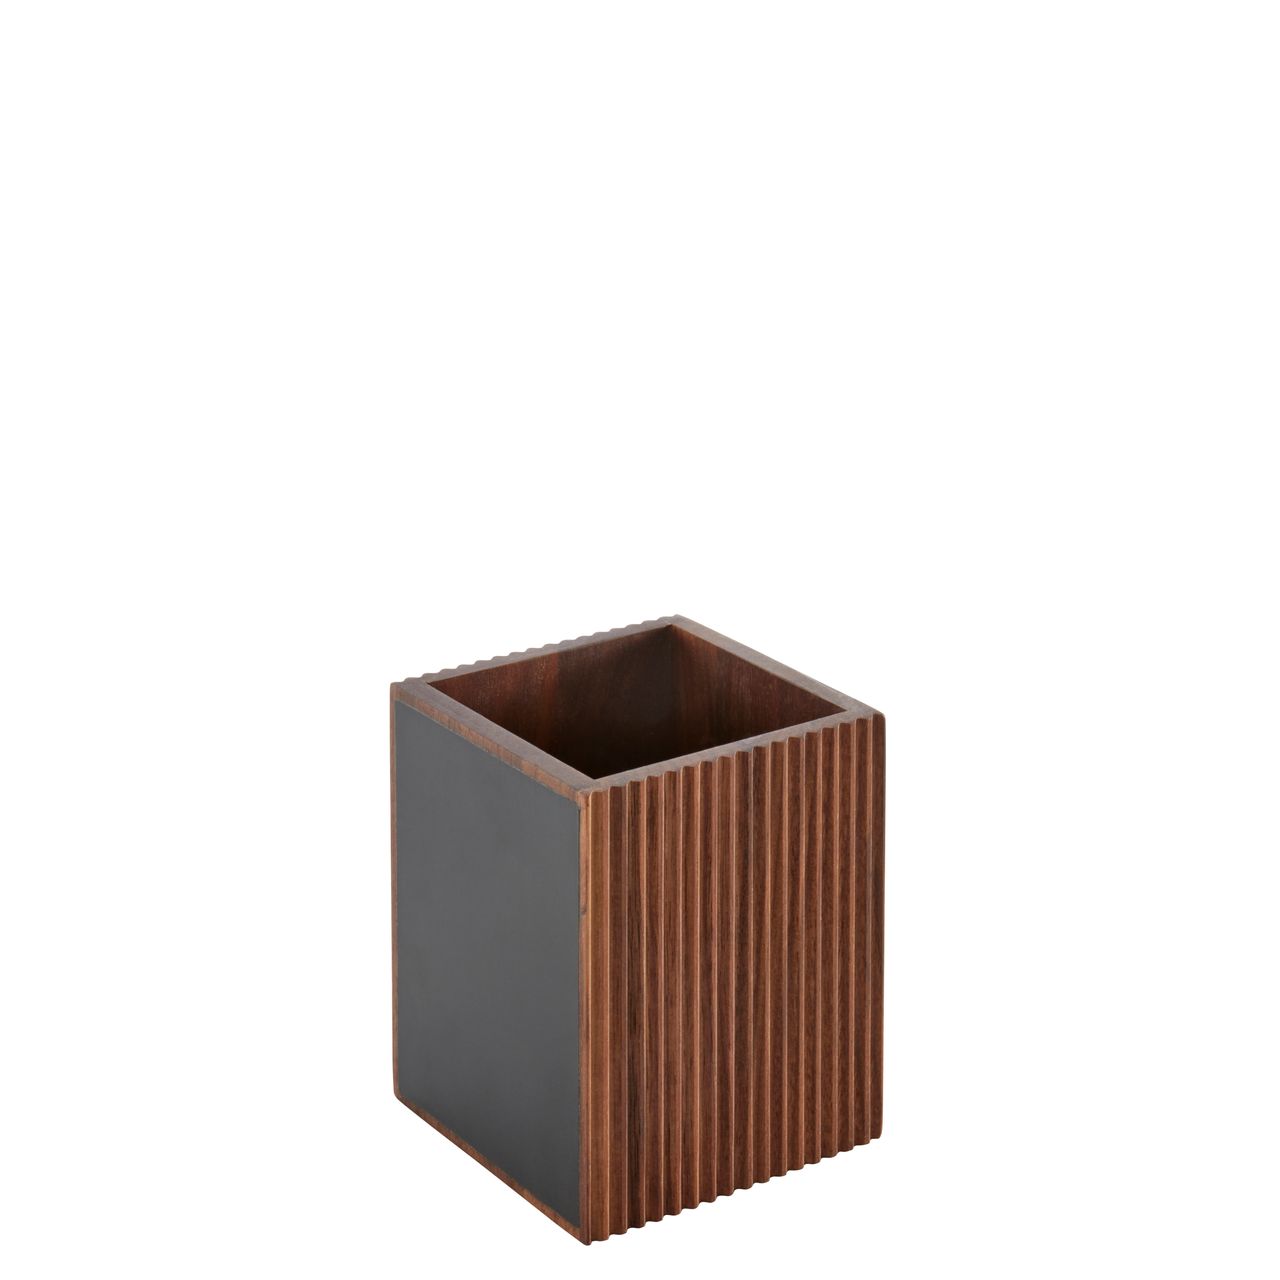 Cutlery box wood (walnut) 11x11x13cm